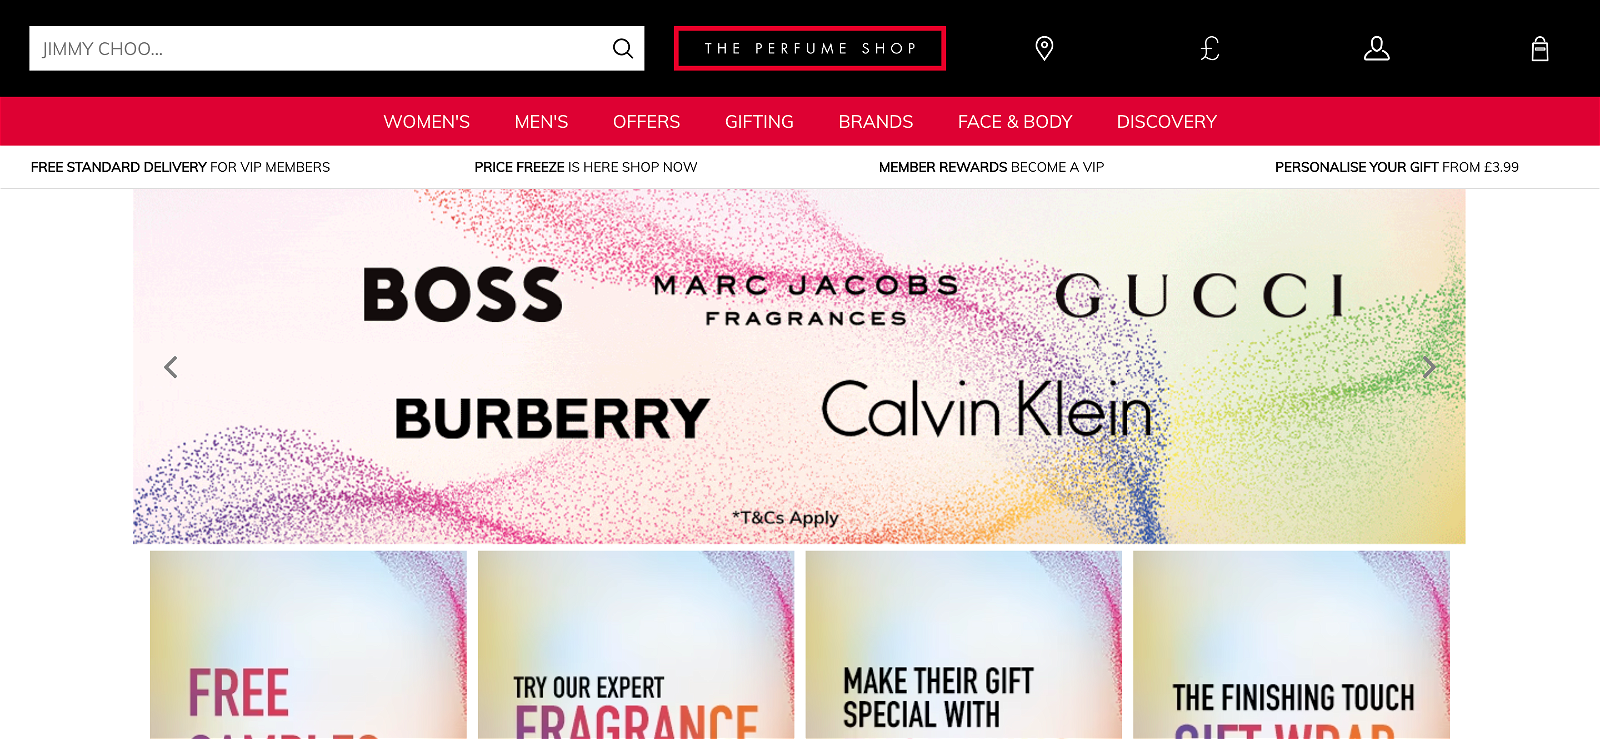 The perfume shop.com